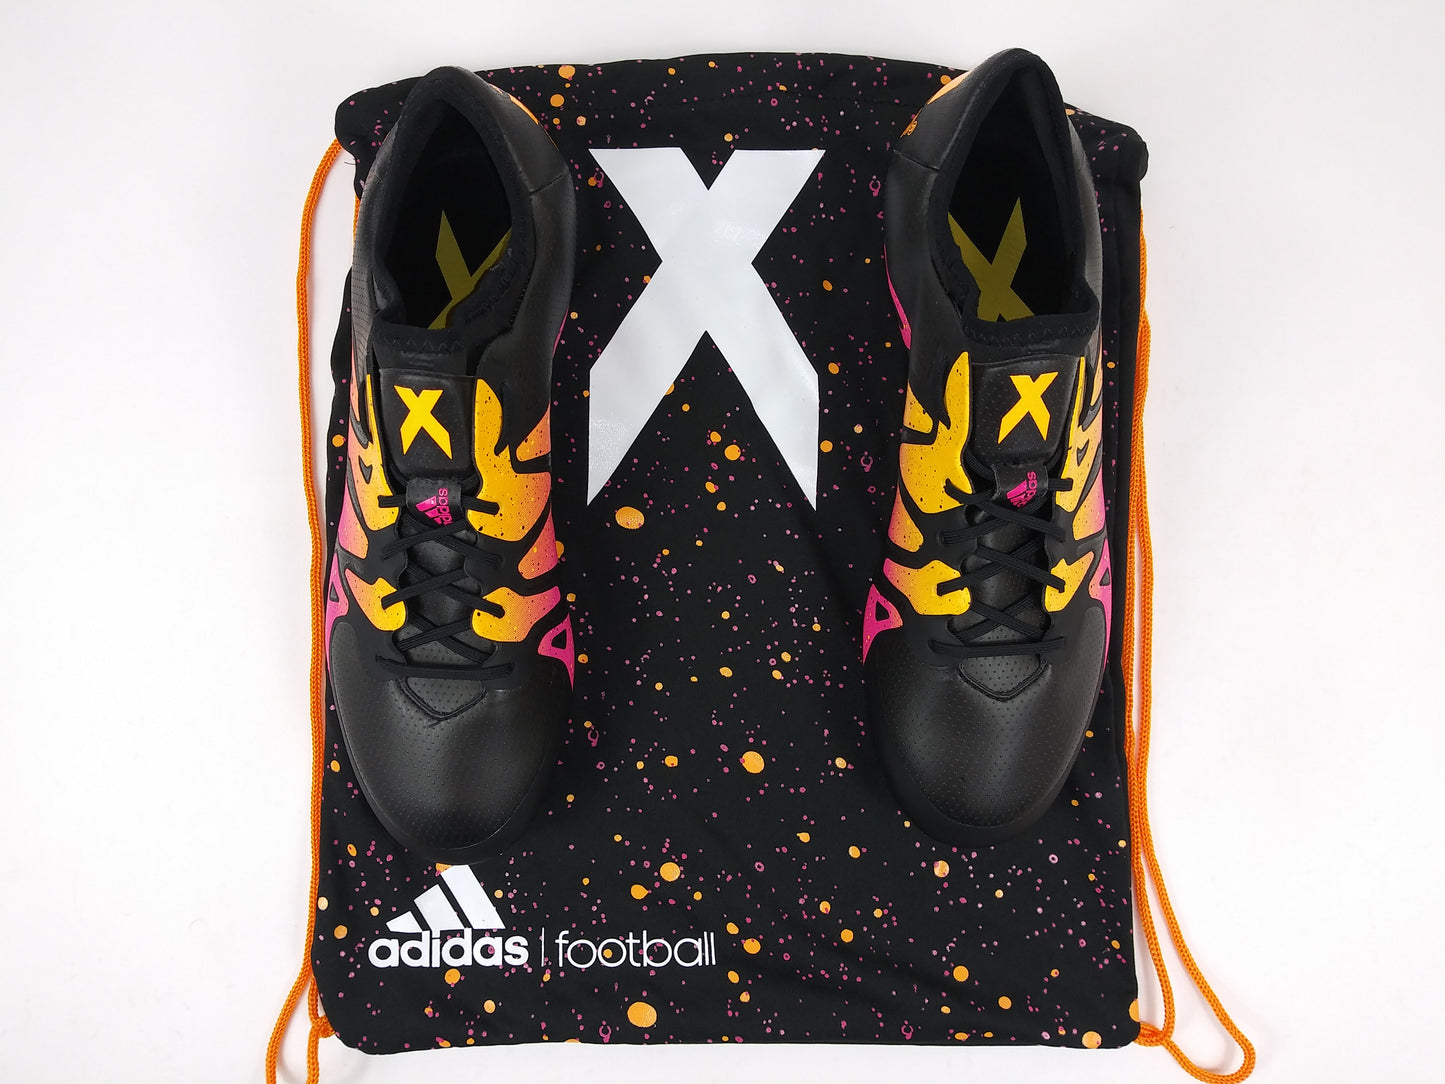 Adidas X 15.1 FG/AG Black Pink